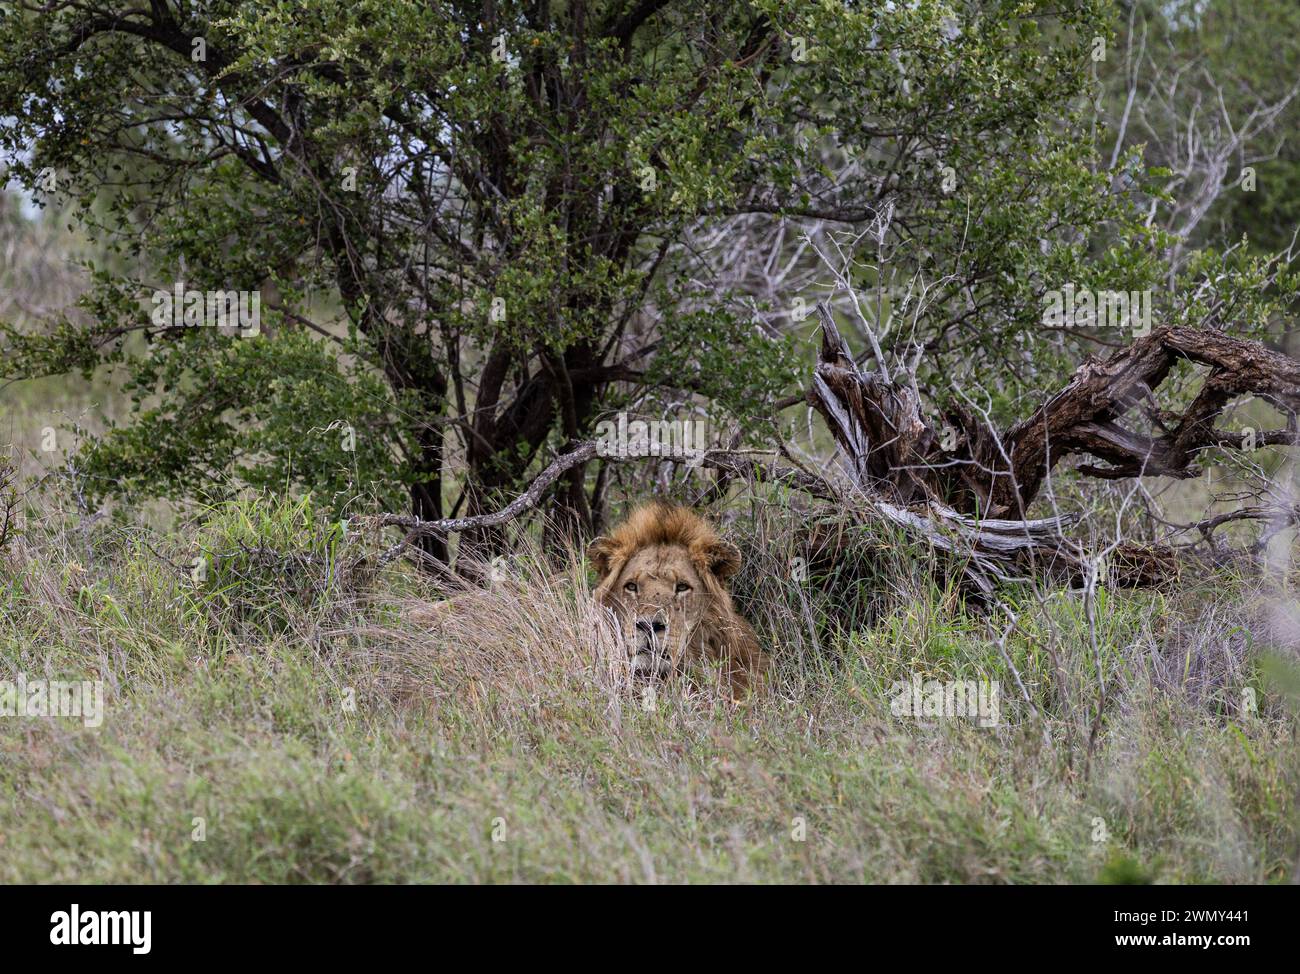 Un grande e bellissimo leone africano che guarda in macchina fotografica, un habitat naturale selvaggio, giace su erba verde. Safari Sud Africa savannah. Sfondo animali da parati fauna selvatica. Parco nazionale di Kruger Foto Stock